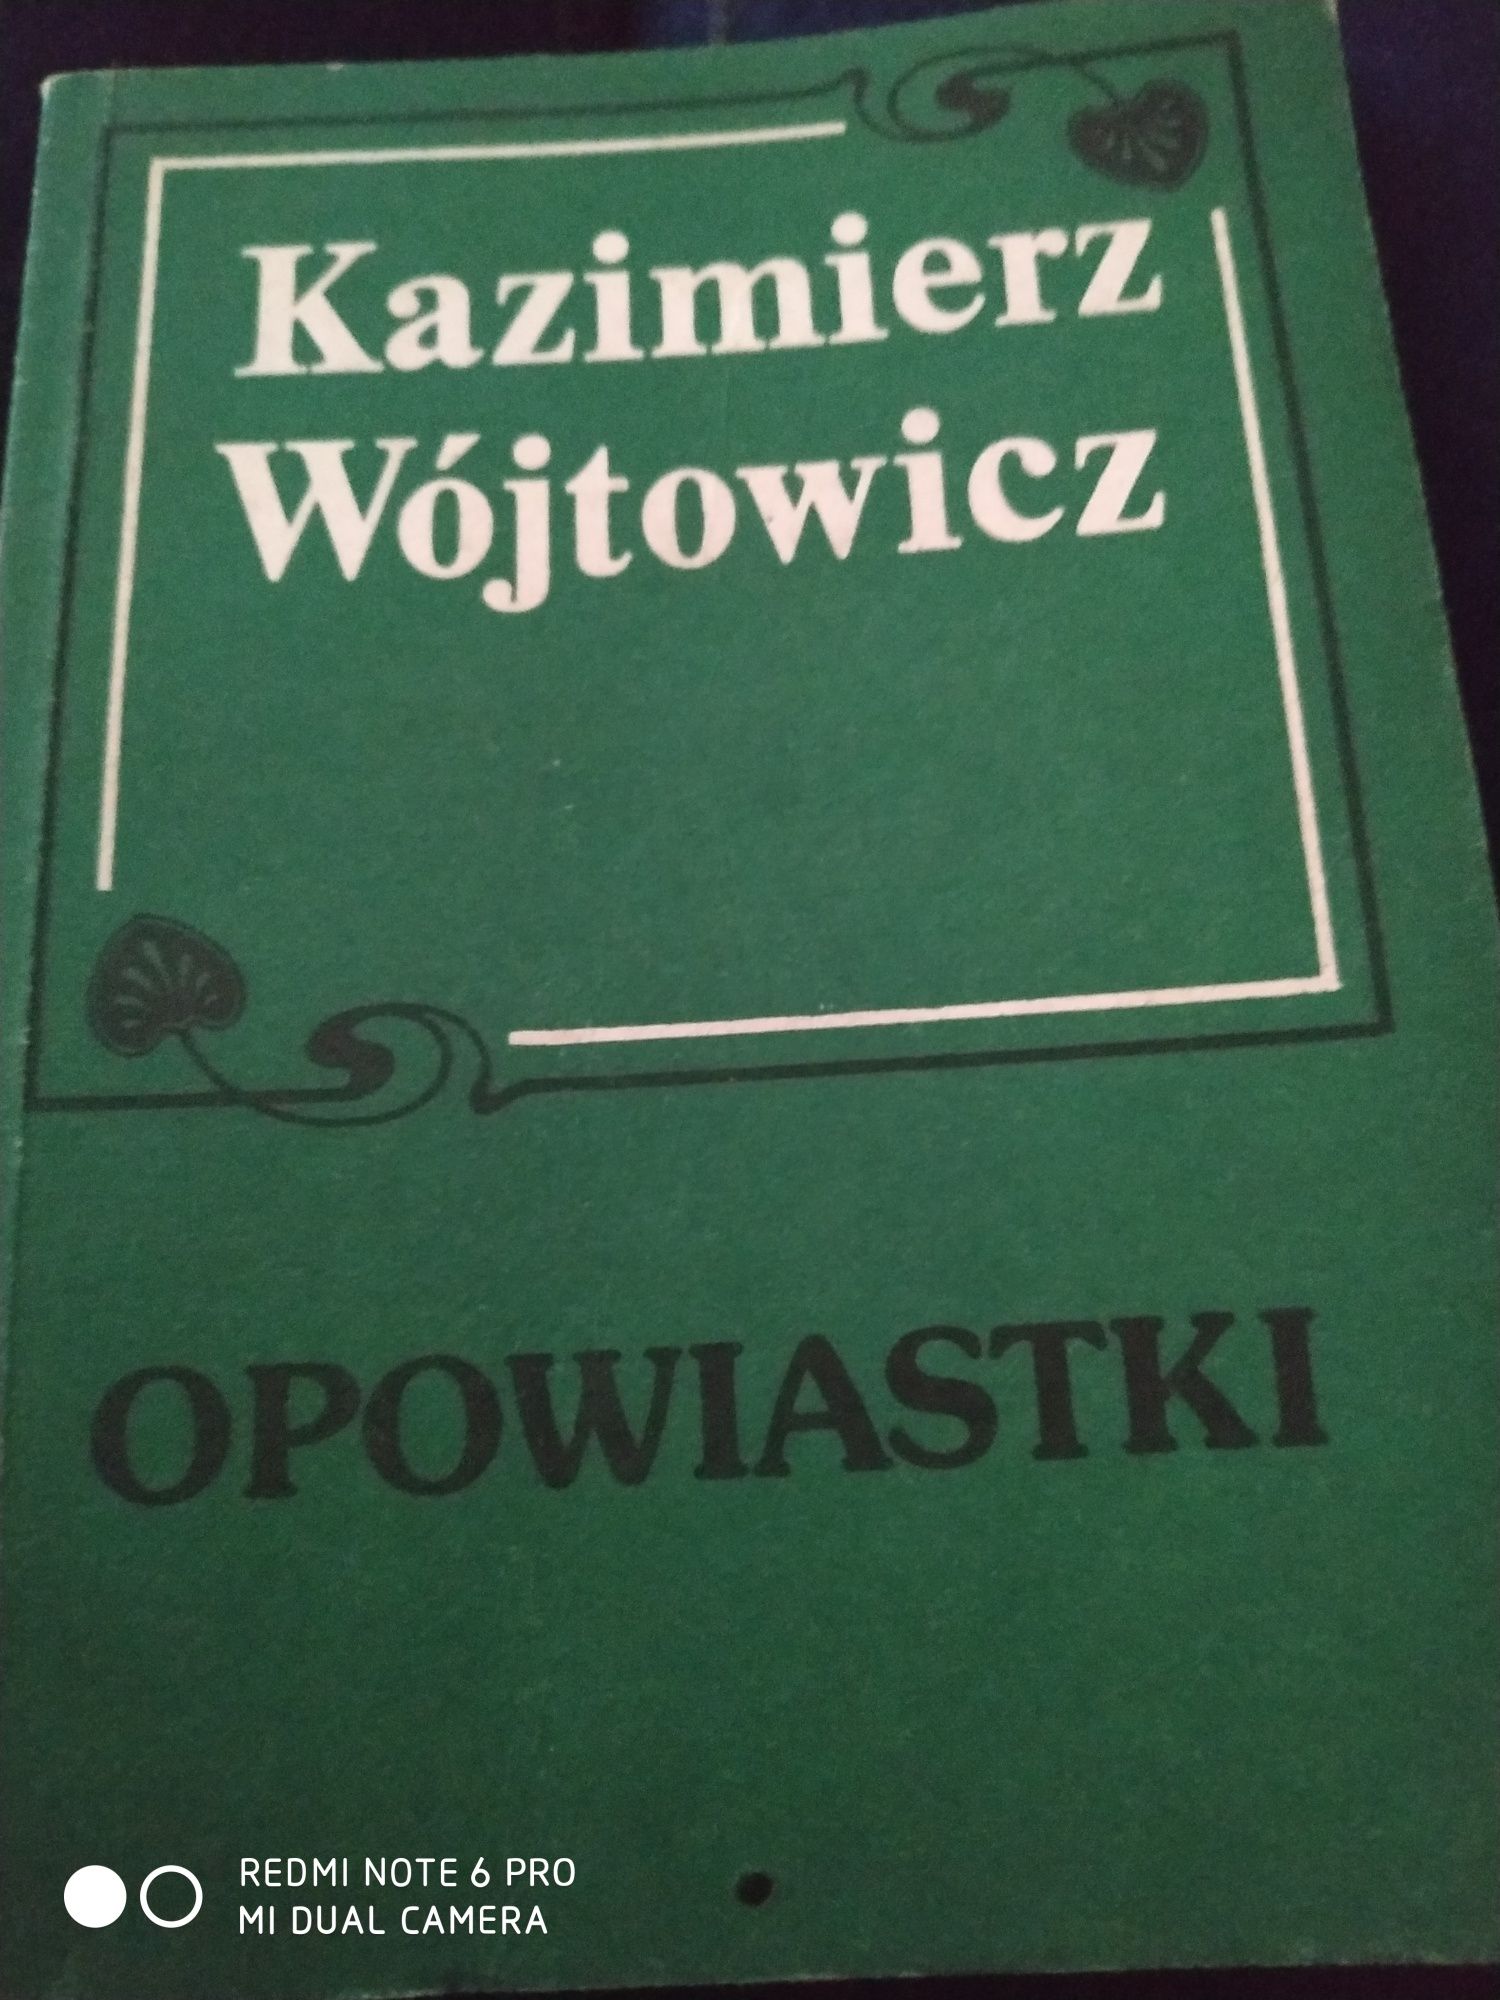 Kazimierz Wójtowicz. Opowiastki. 1988